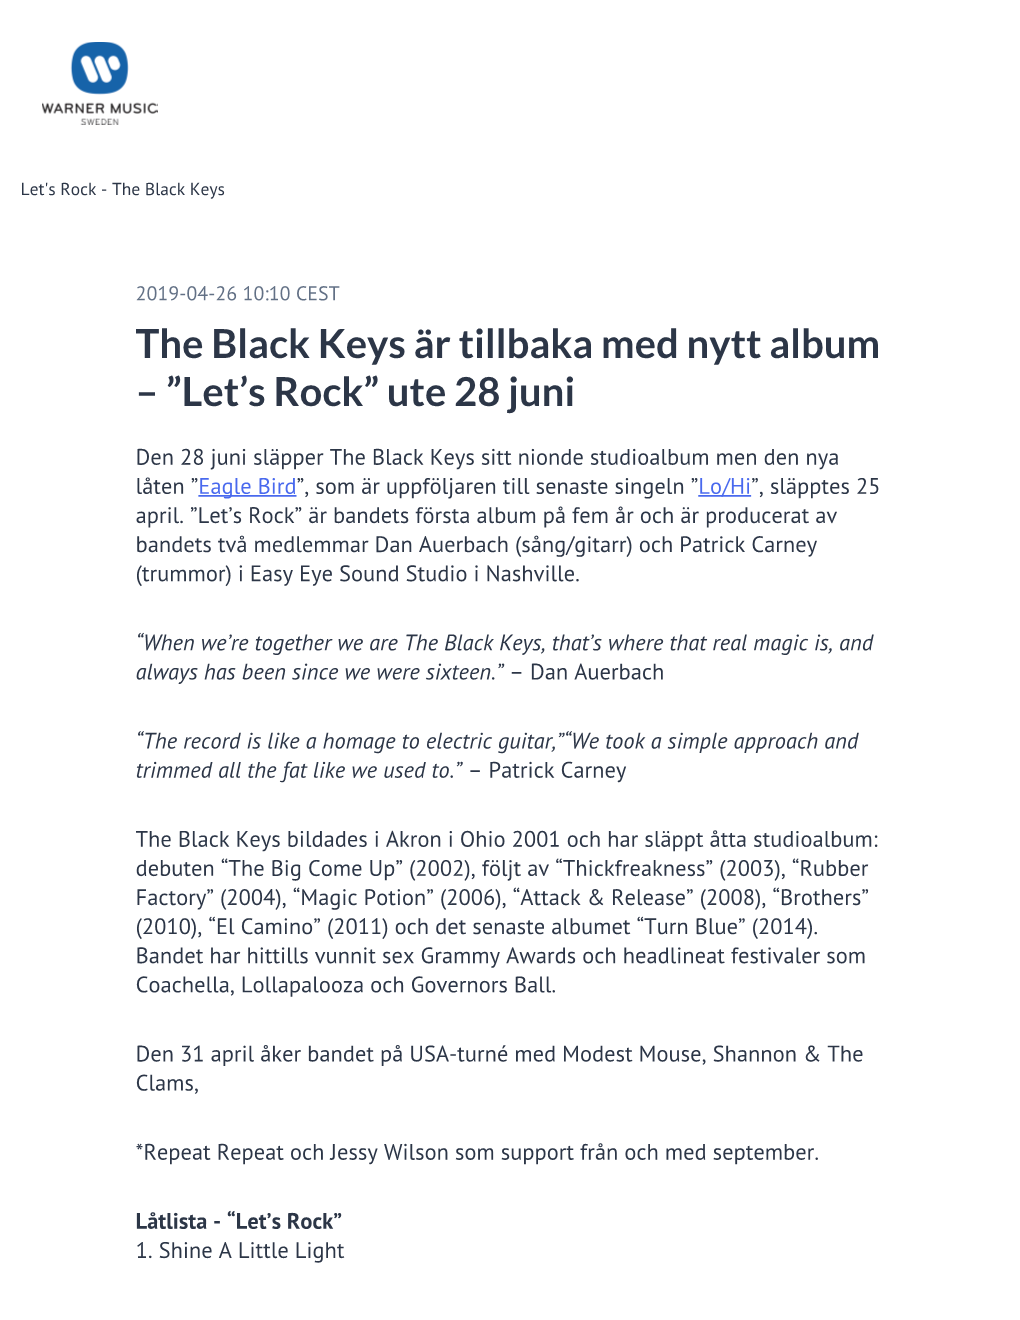 The Black Keys Är Tillbaka Med Nytt Album – ”Let's Rock”